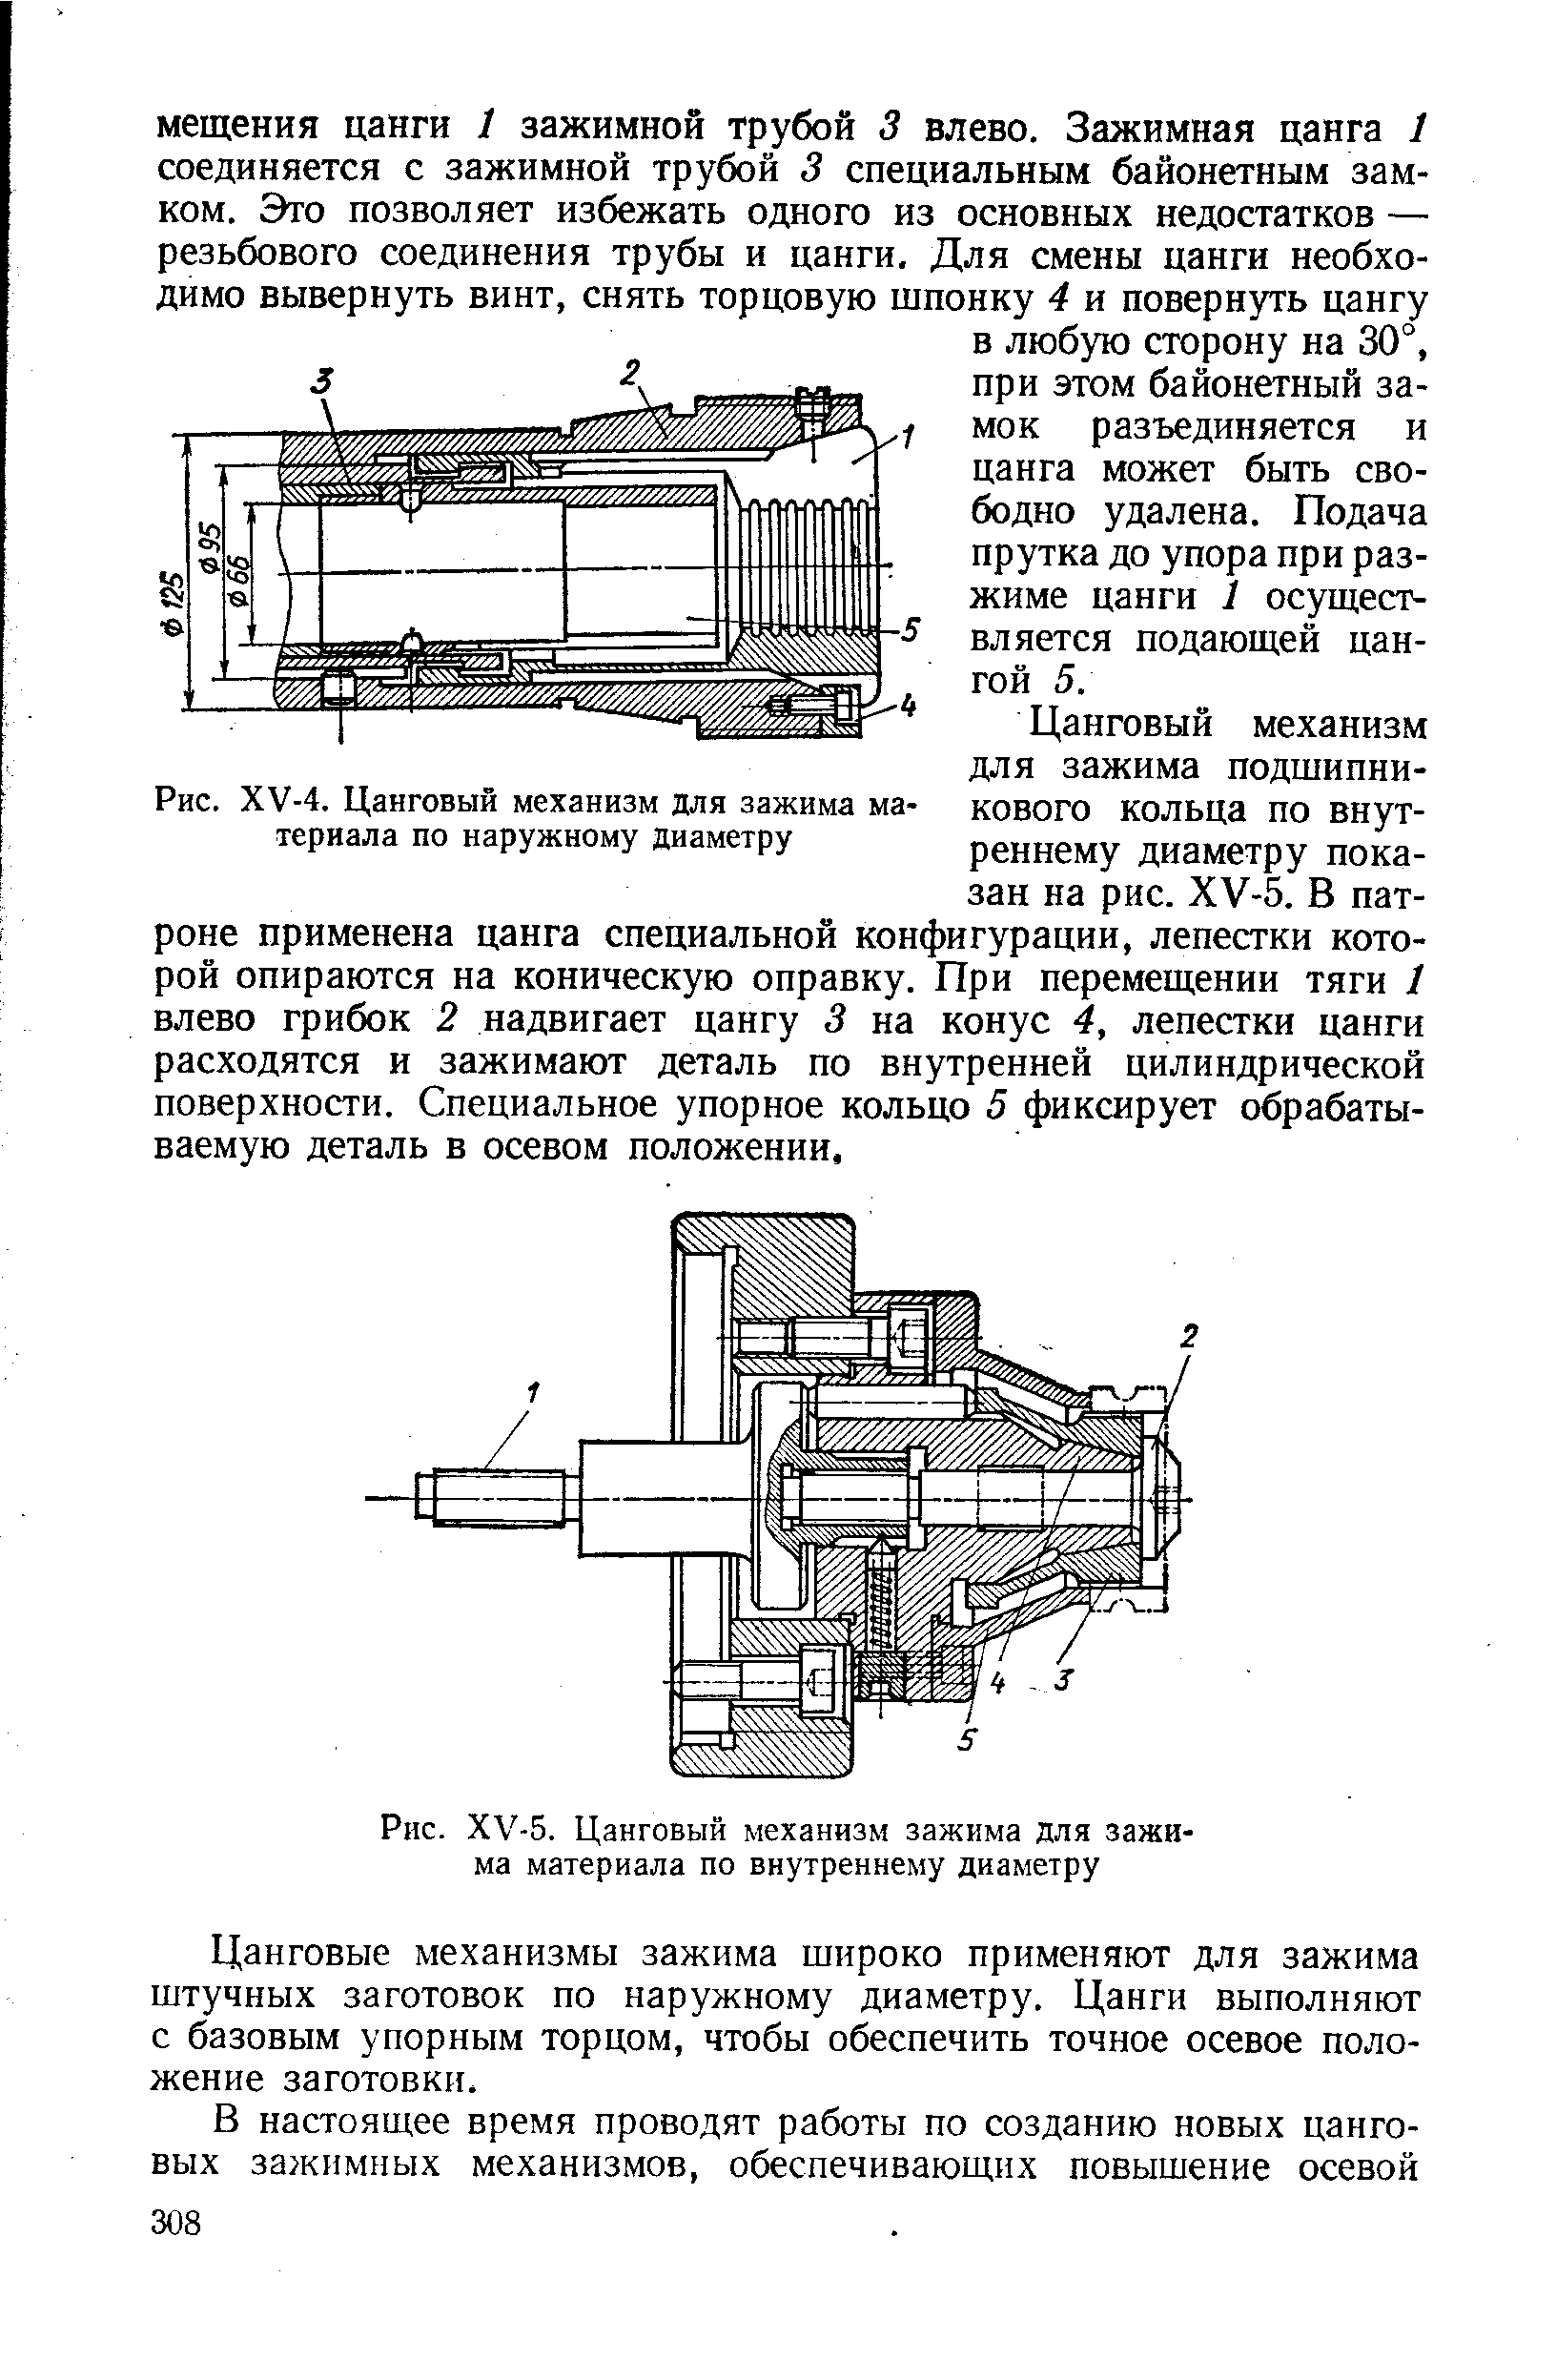 Рис. ХУ-4. Цанговый механизм для зажима материала по наружному диаметру
